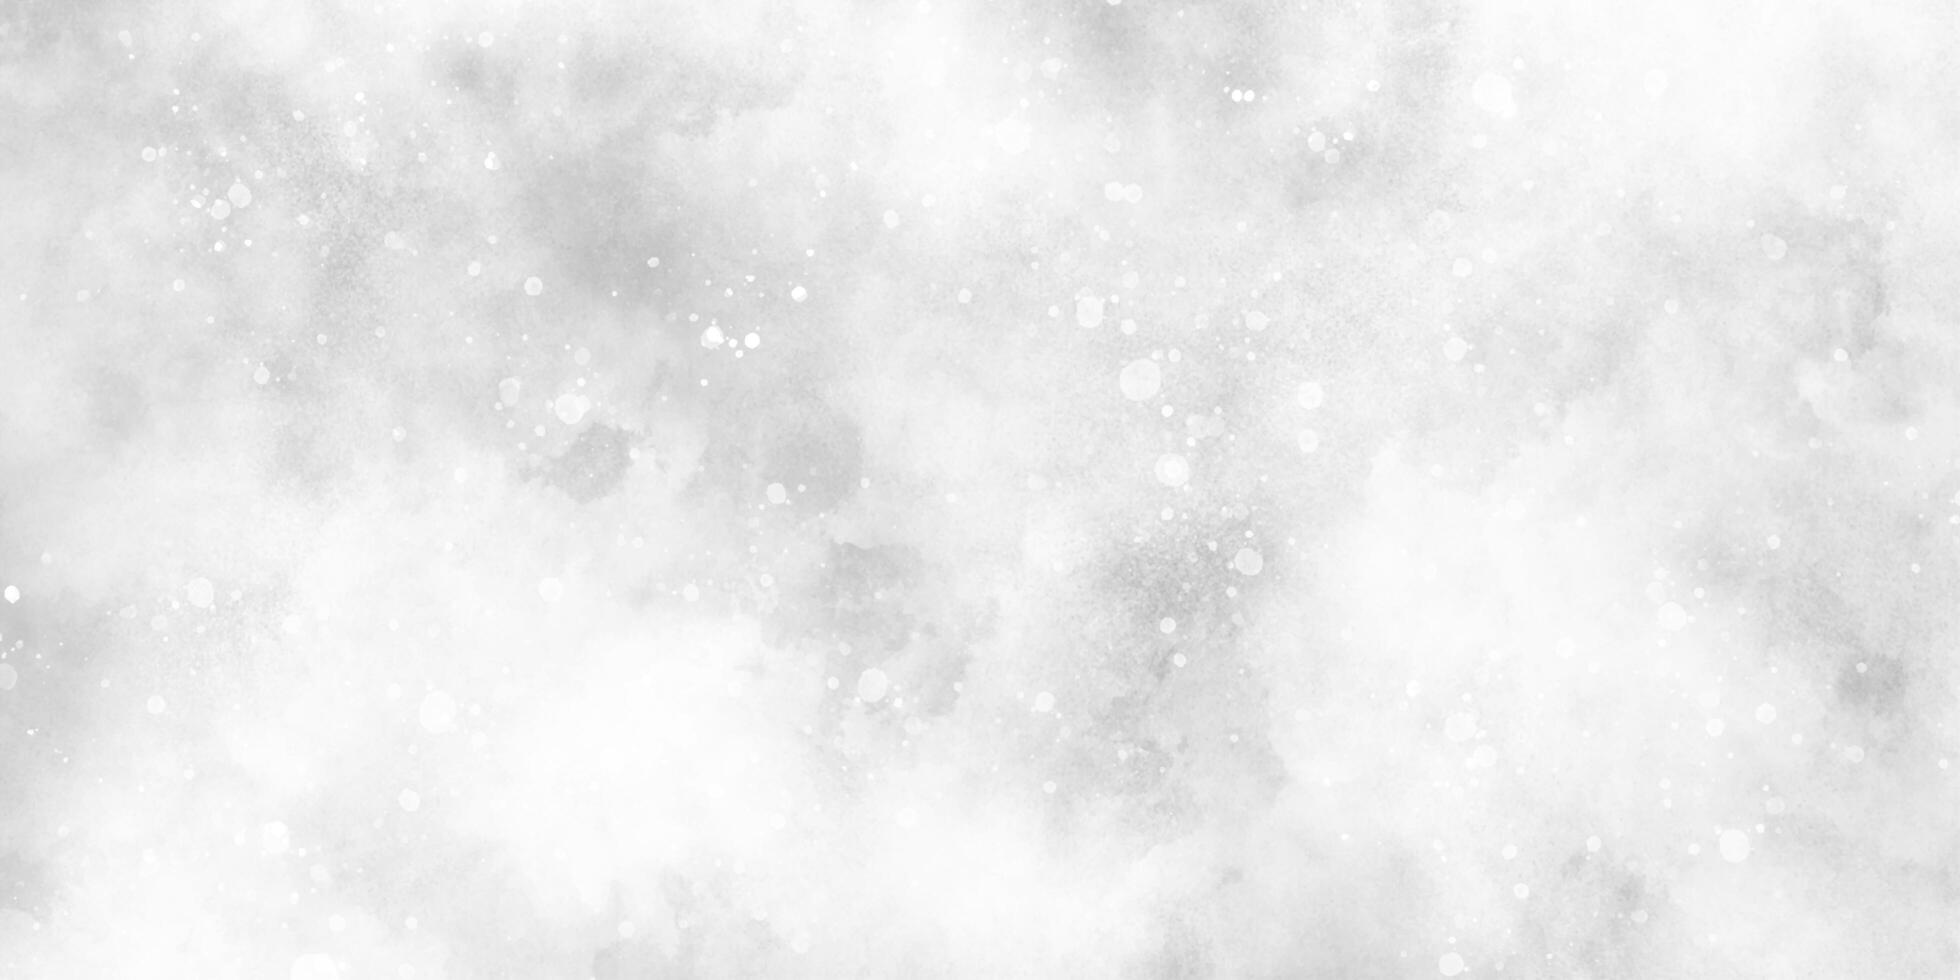 wit grijs waterverf met plons en zacht gloeiend schittert, sneeuw vallend in de sneeuw in de winter ochtend, zonneschijn of sprankelend lichten en glinsterende gloed winter ochtend- van sneeuw vallend achtergrond. foto